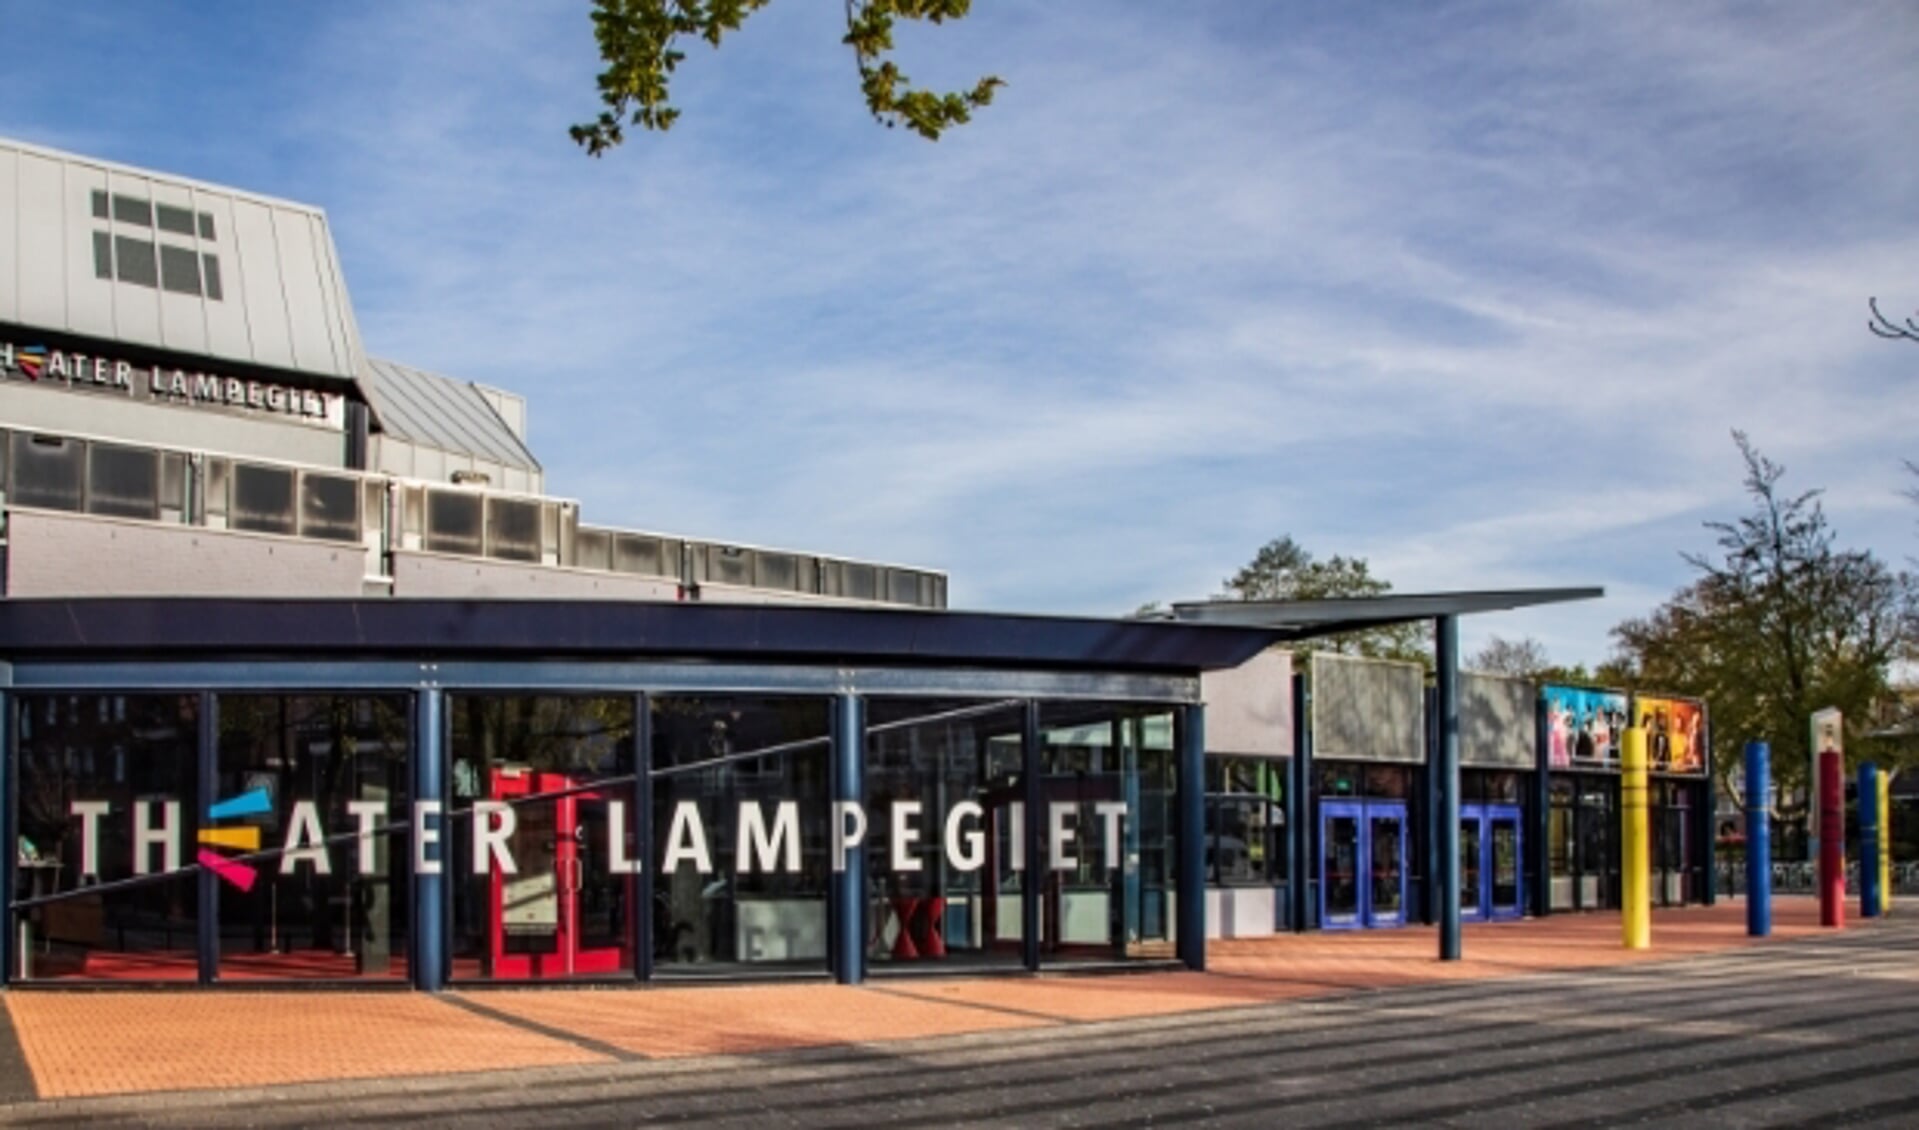 Theater Lampegiet in Veenendaal.